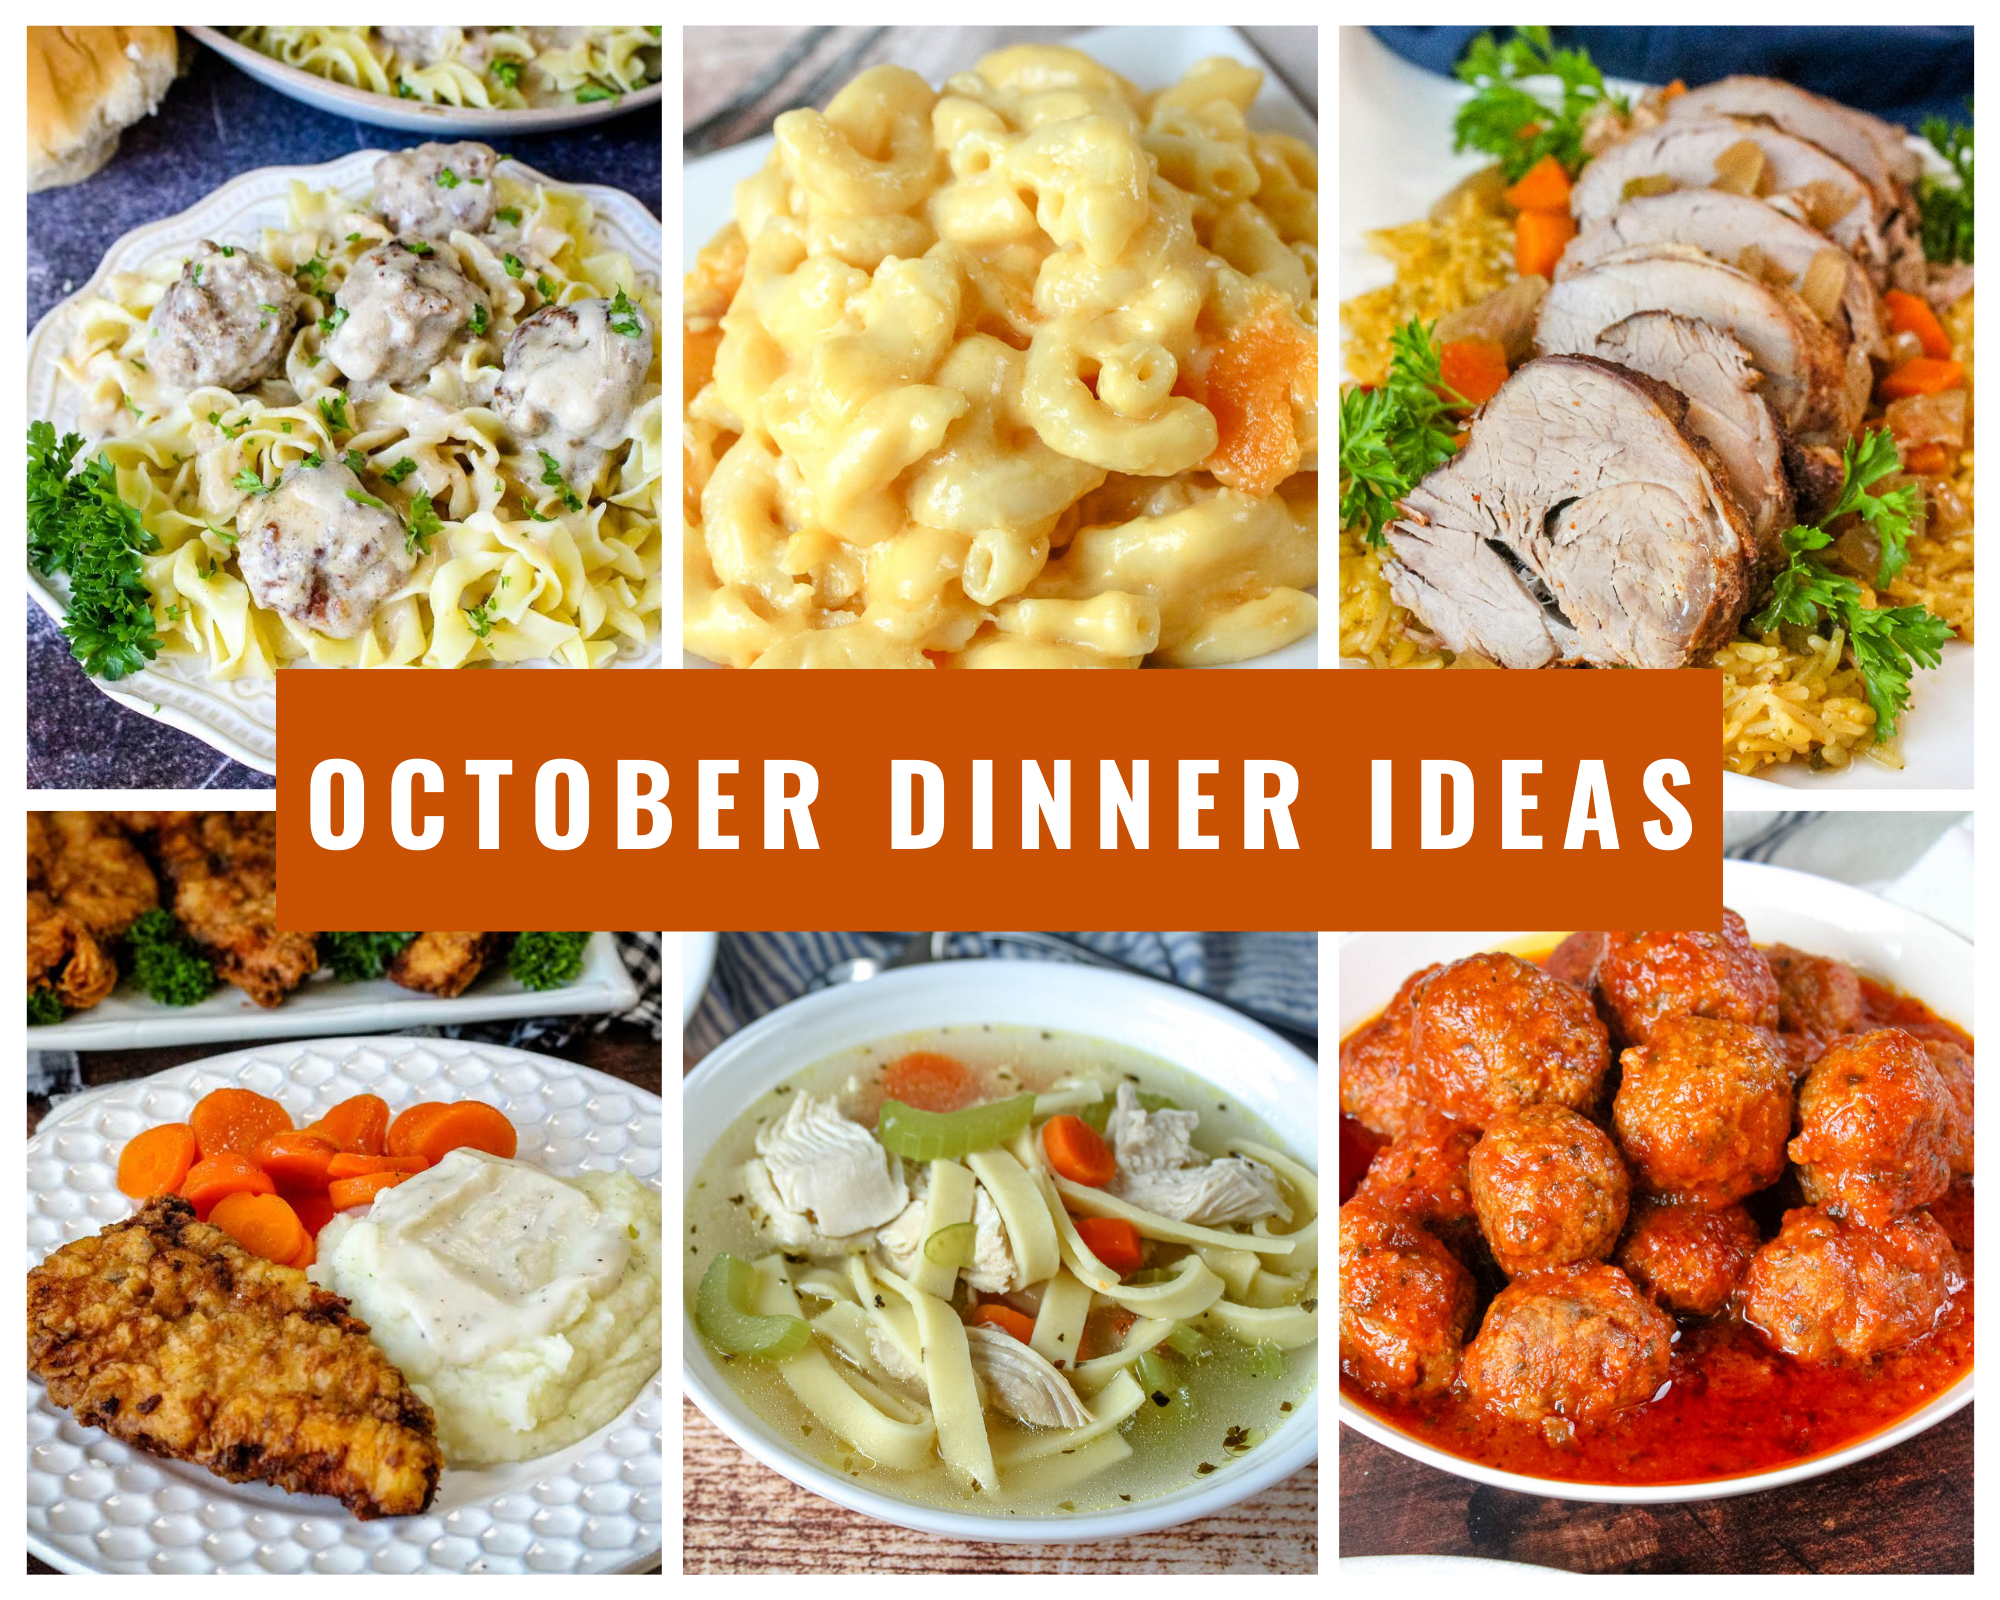 October dinner ideas